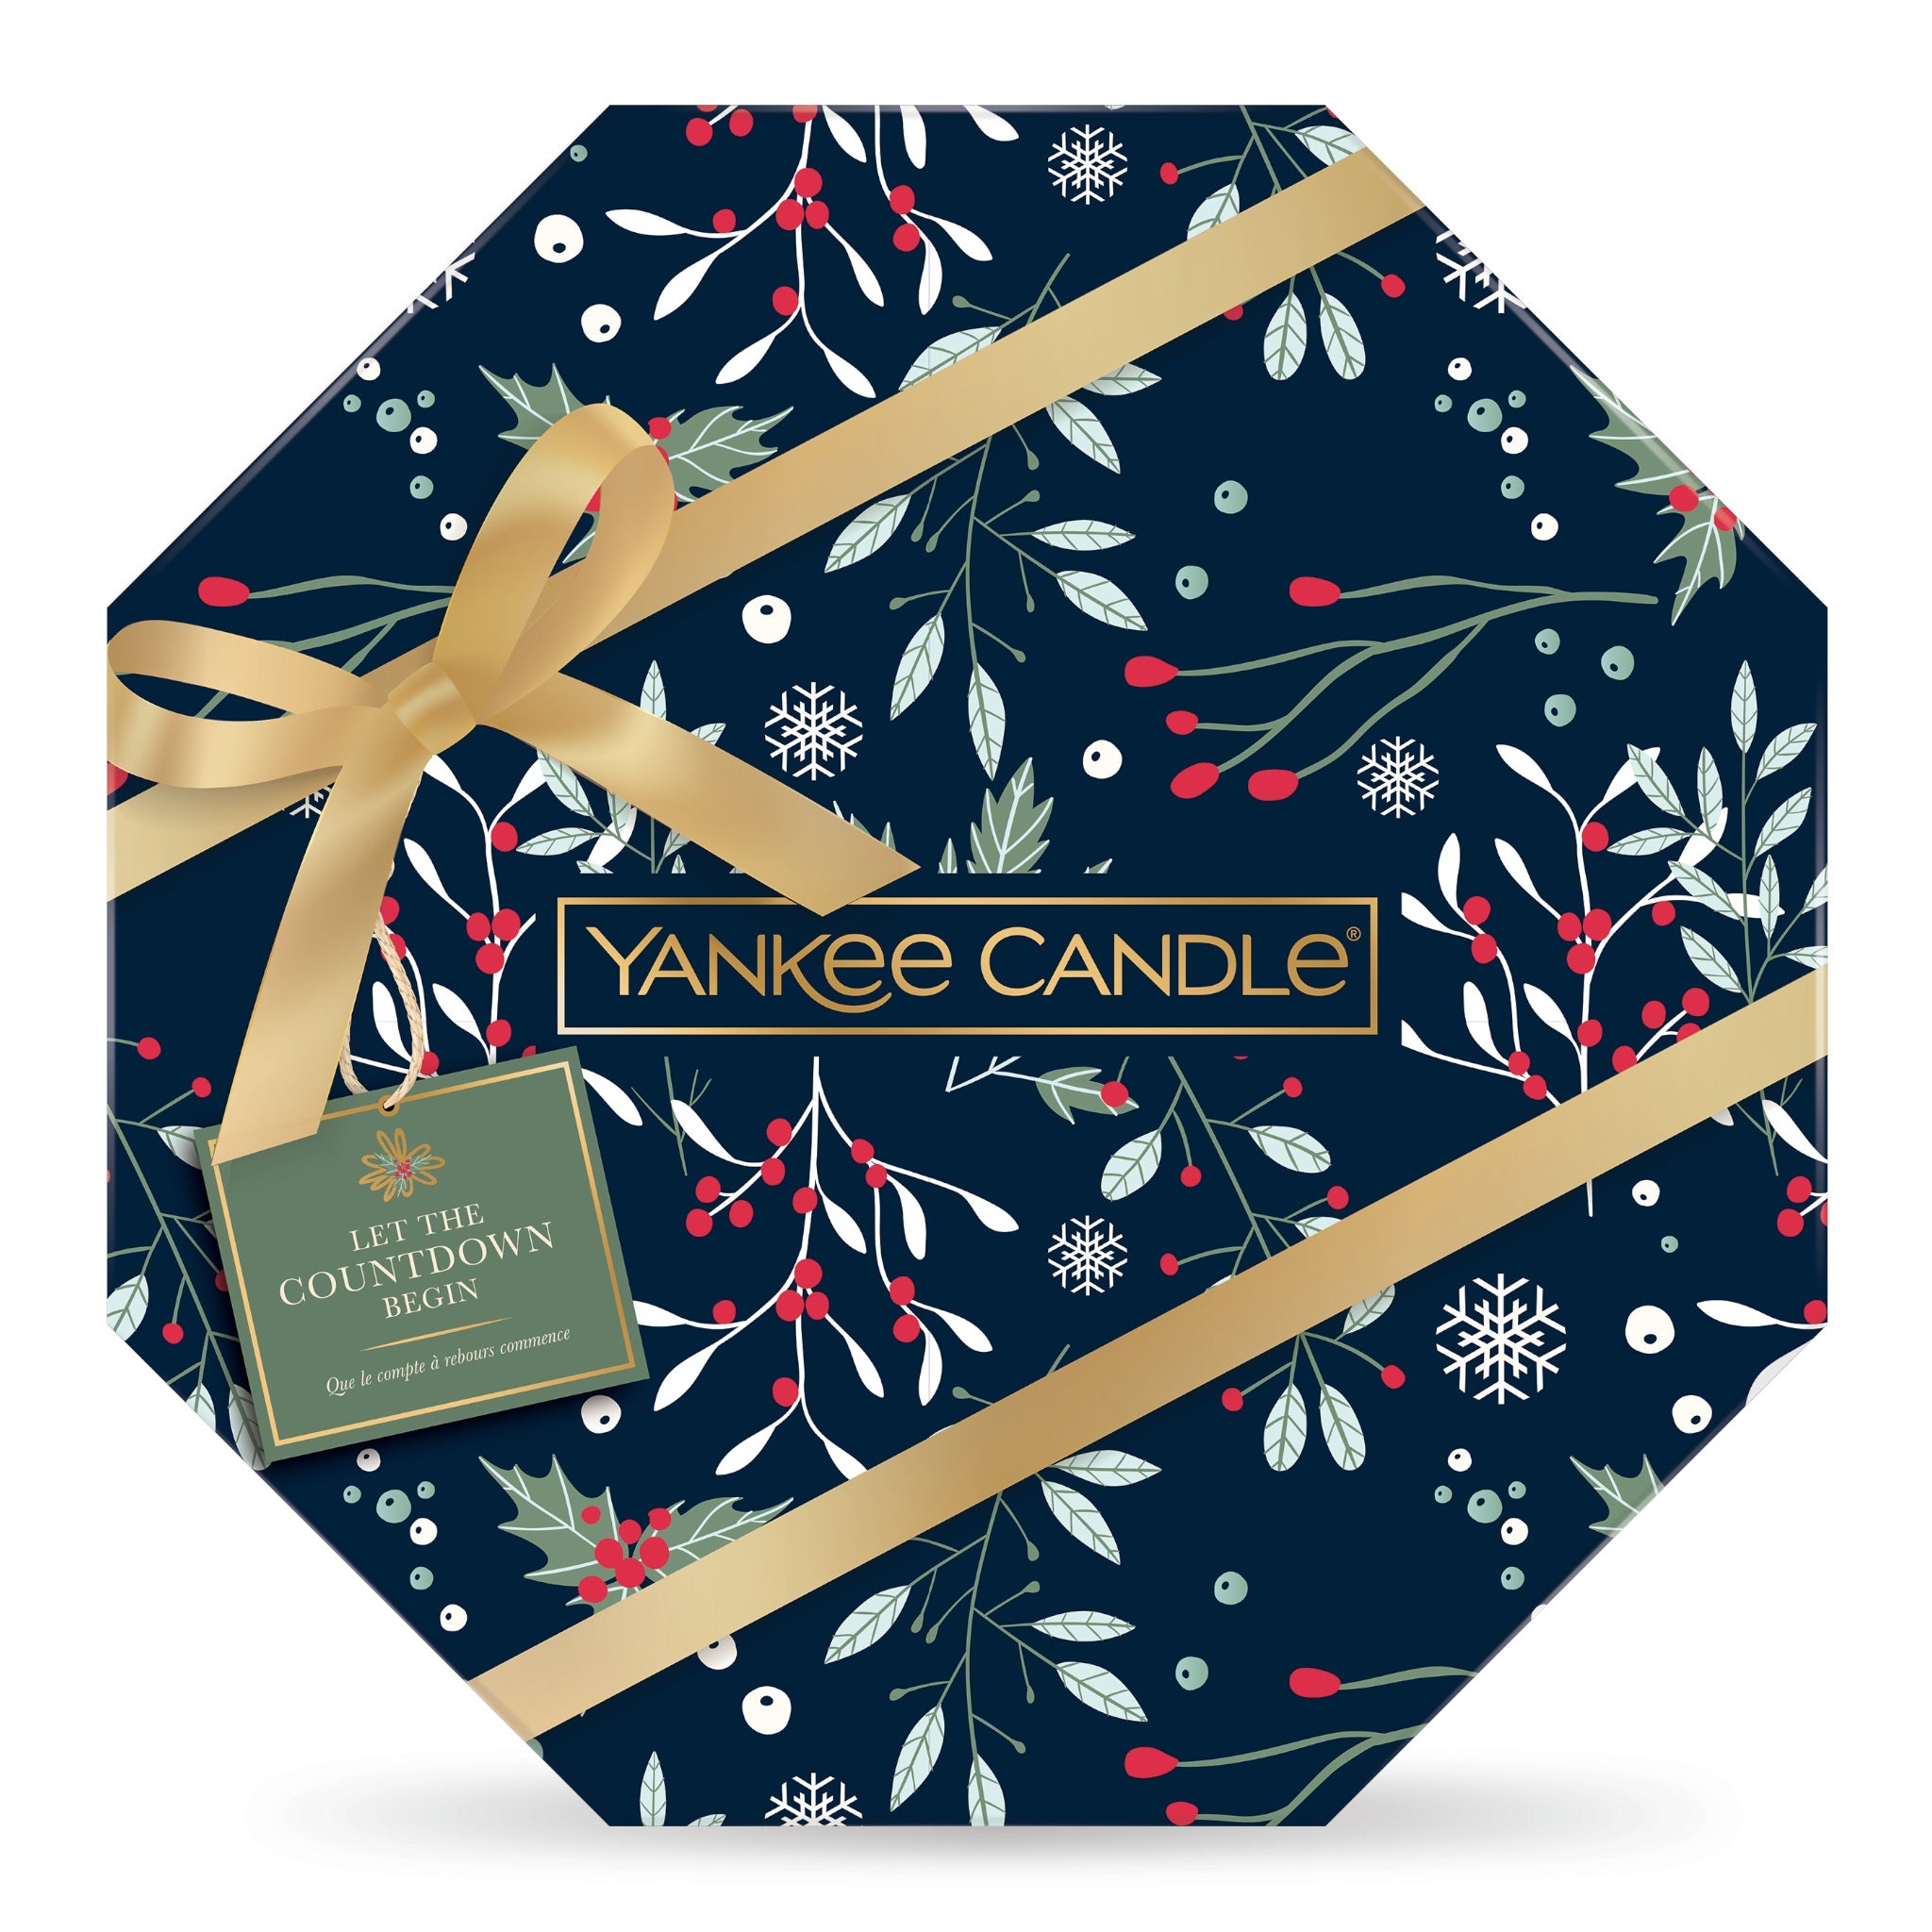 CALENDARIO DELL'AVVENTO GHIRLANDA -Yankee Candle- Confezione Regalo Countdown to Christmas